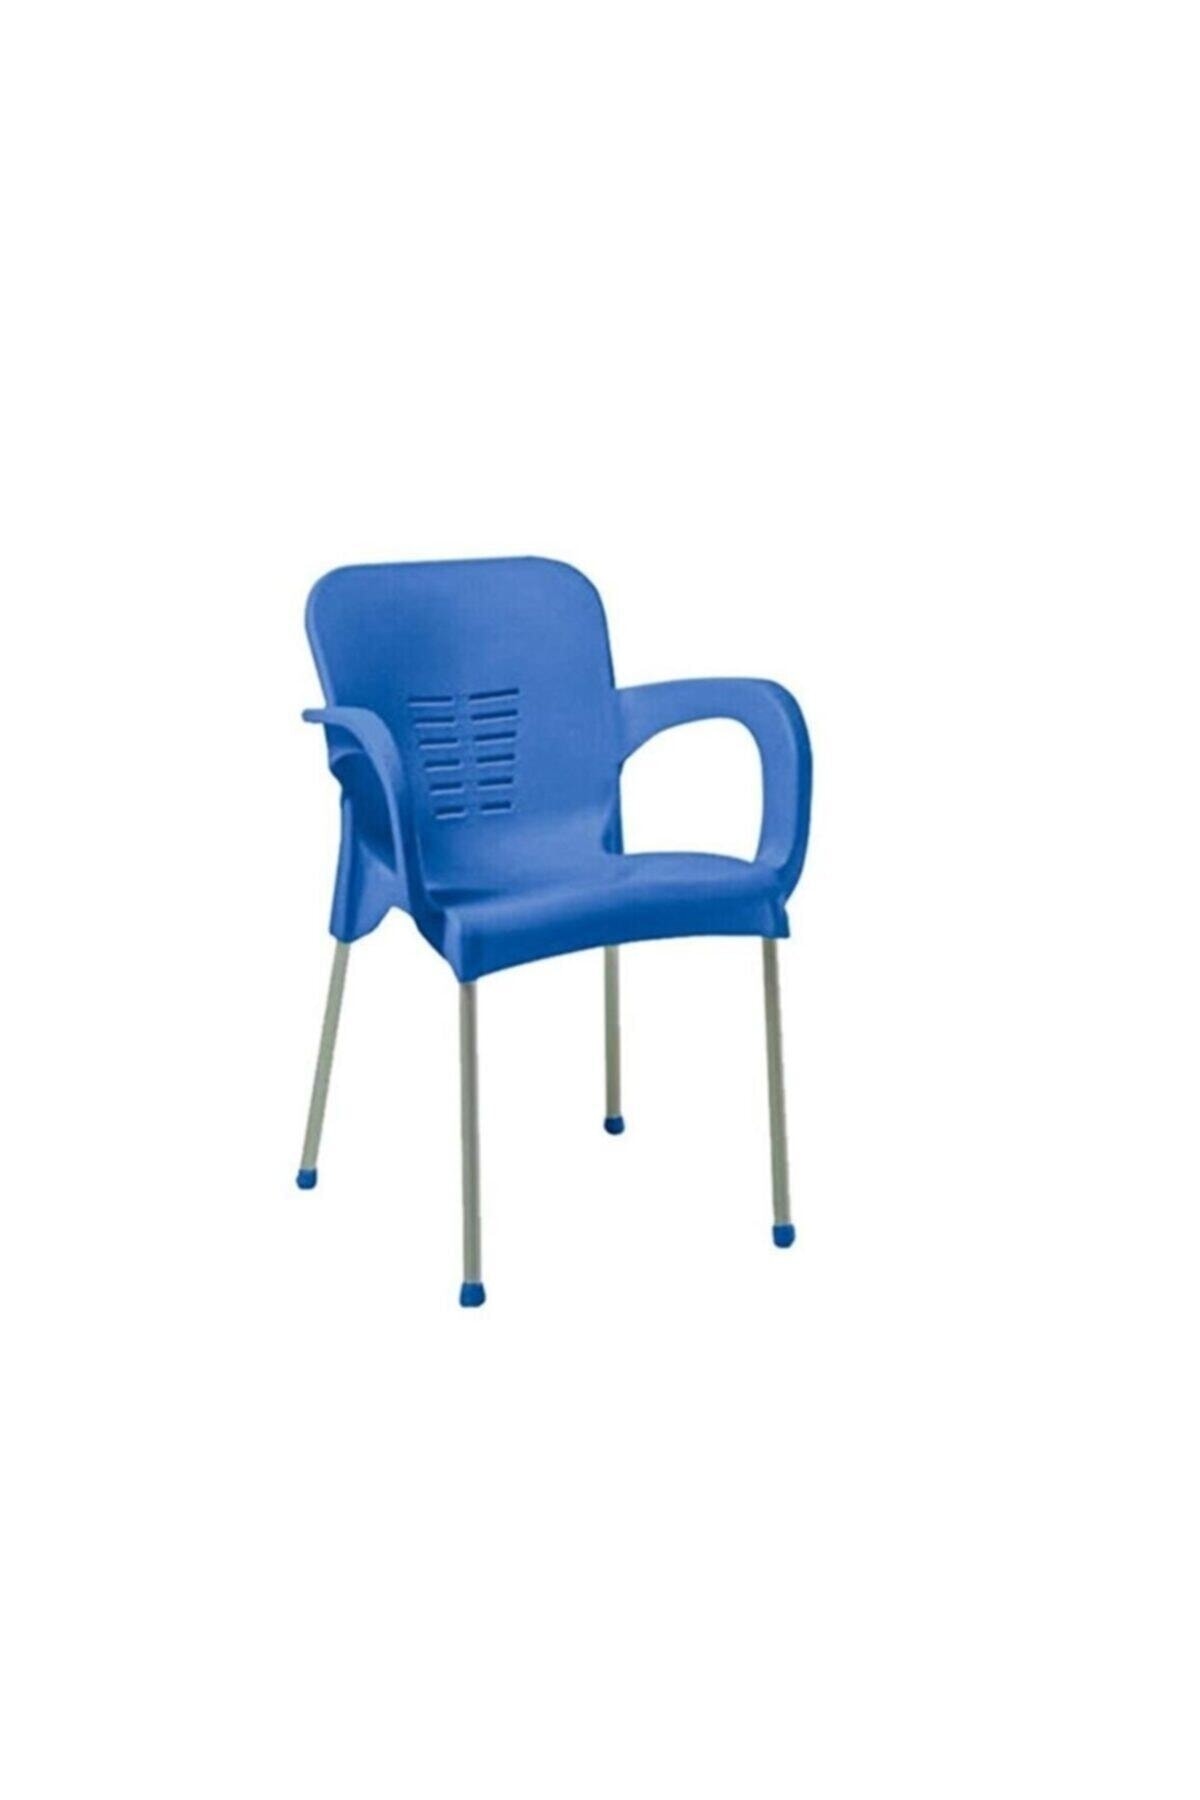 SAZLIK Metal Ayaklı Paris Plastik Sandalye Mavi Orjinal